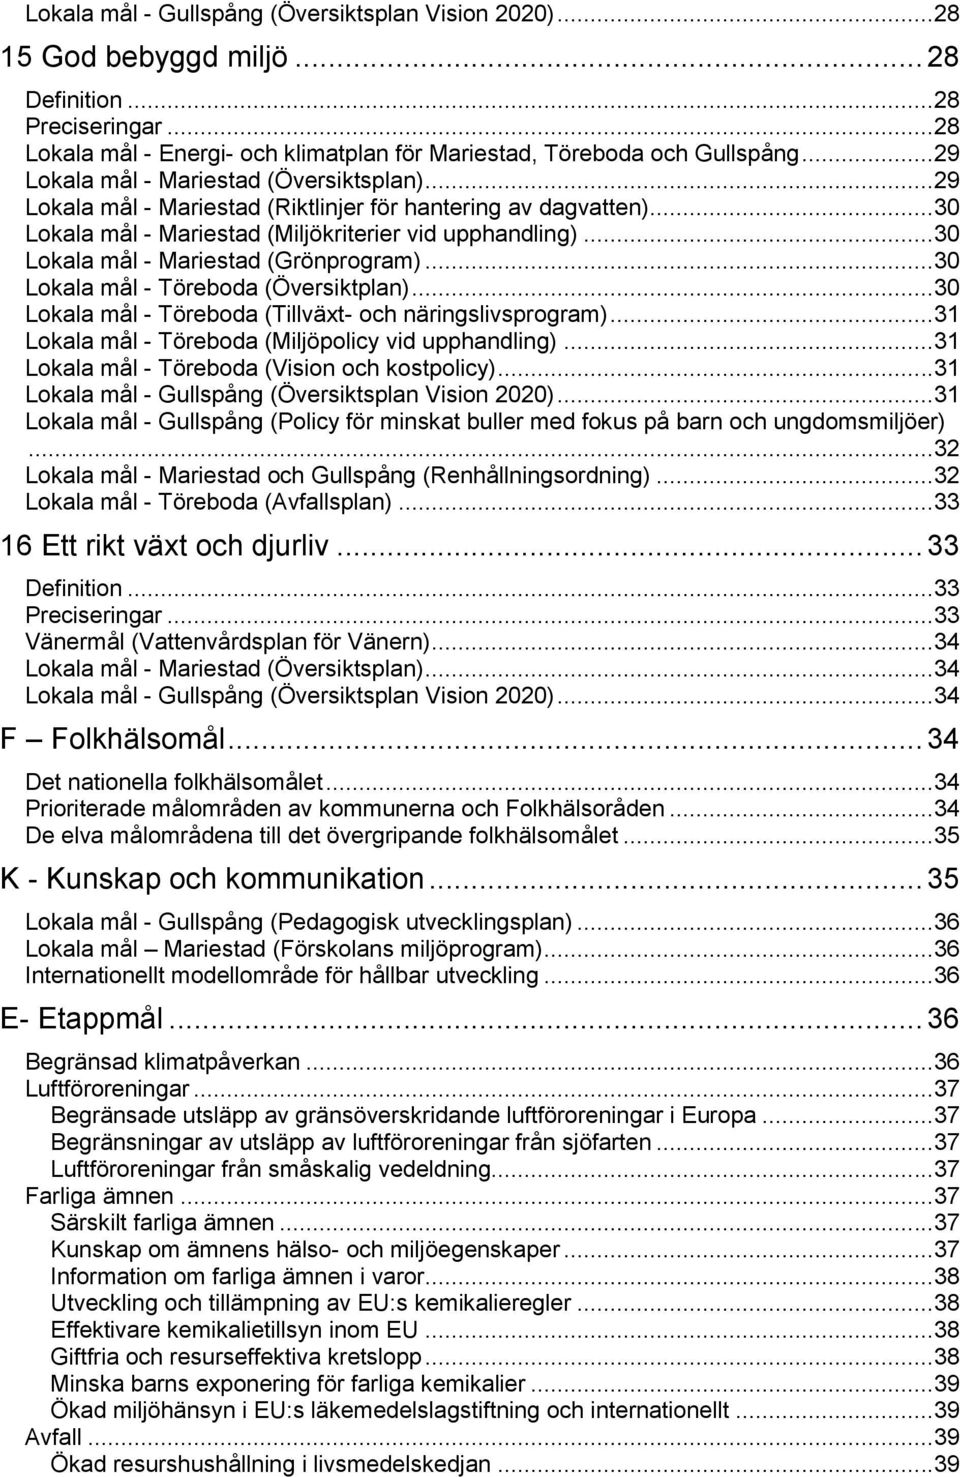 ..0 Lokala mål - Mariestad (Grönprogram)...0 Lokala mål - Töreboda (Översiktplan)...0 Lokala mål - Töreboda (Tillväxt- och näringslivsprogram)... Lokala mål - Töreboda (Miljöpolicy vid upphandling).